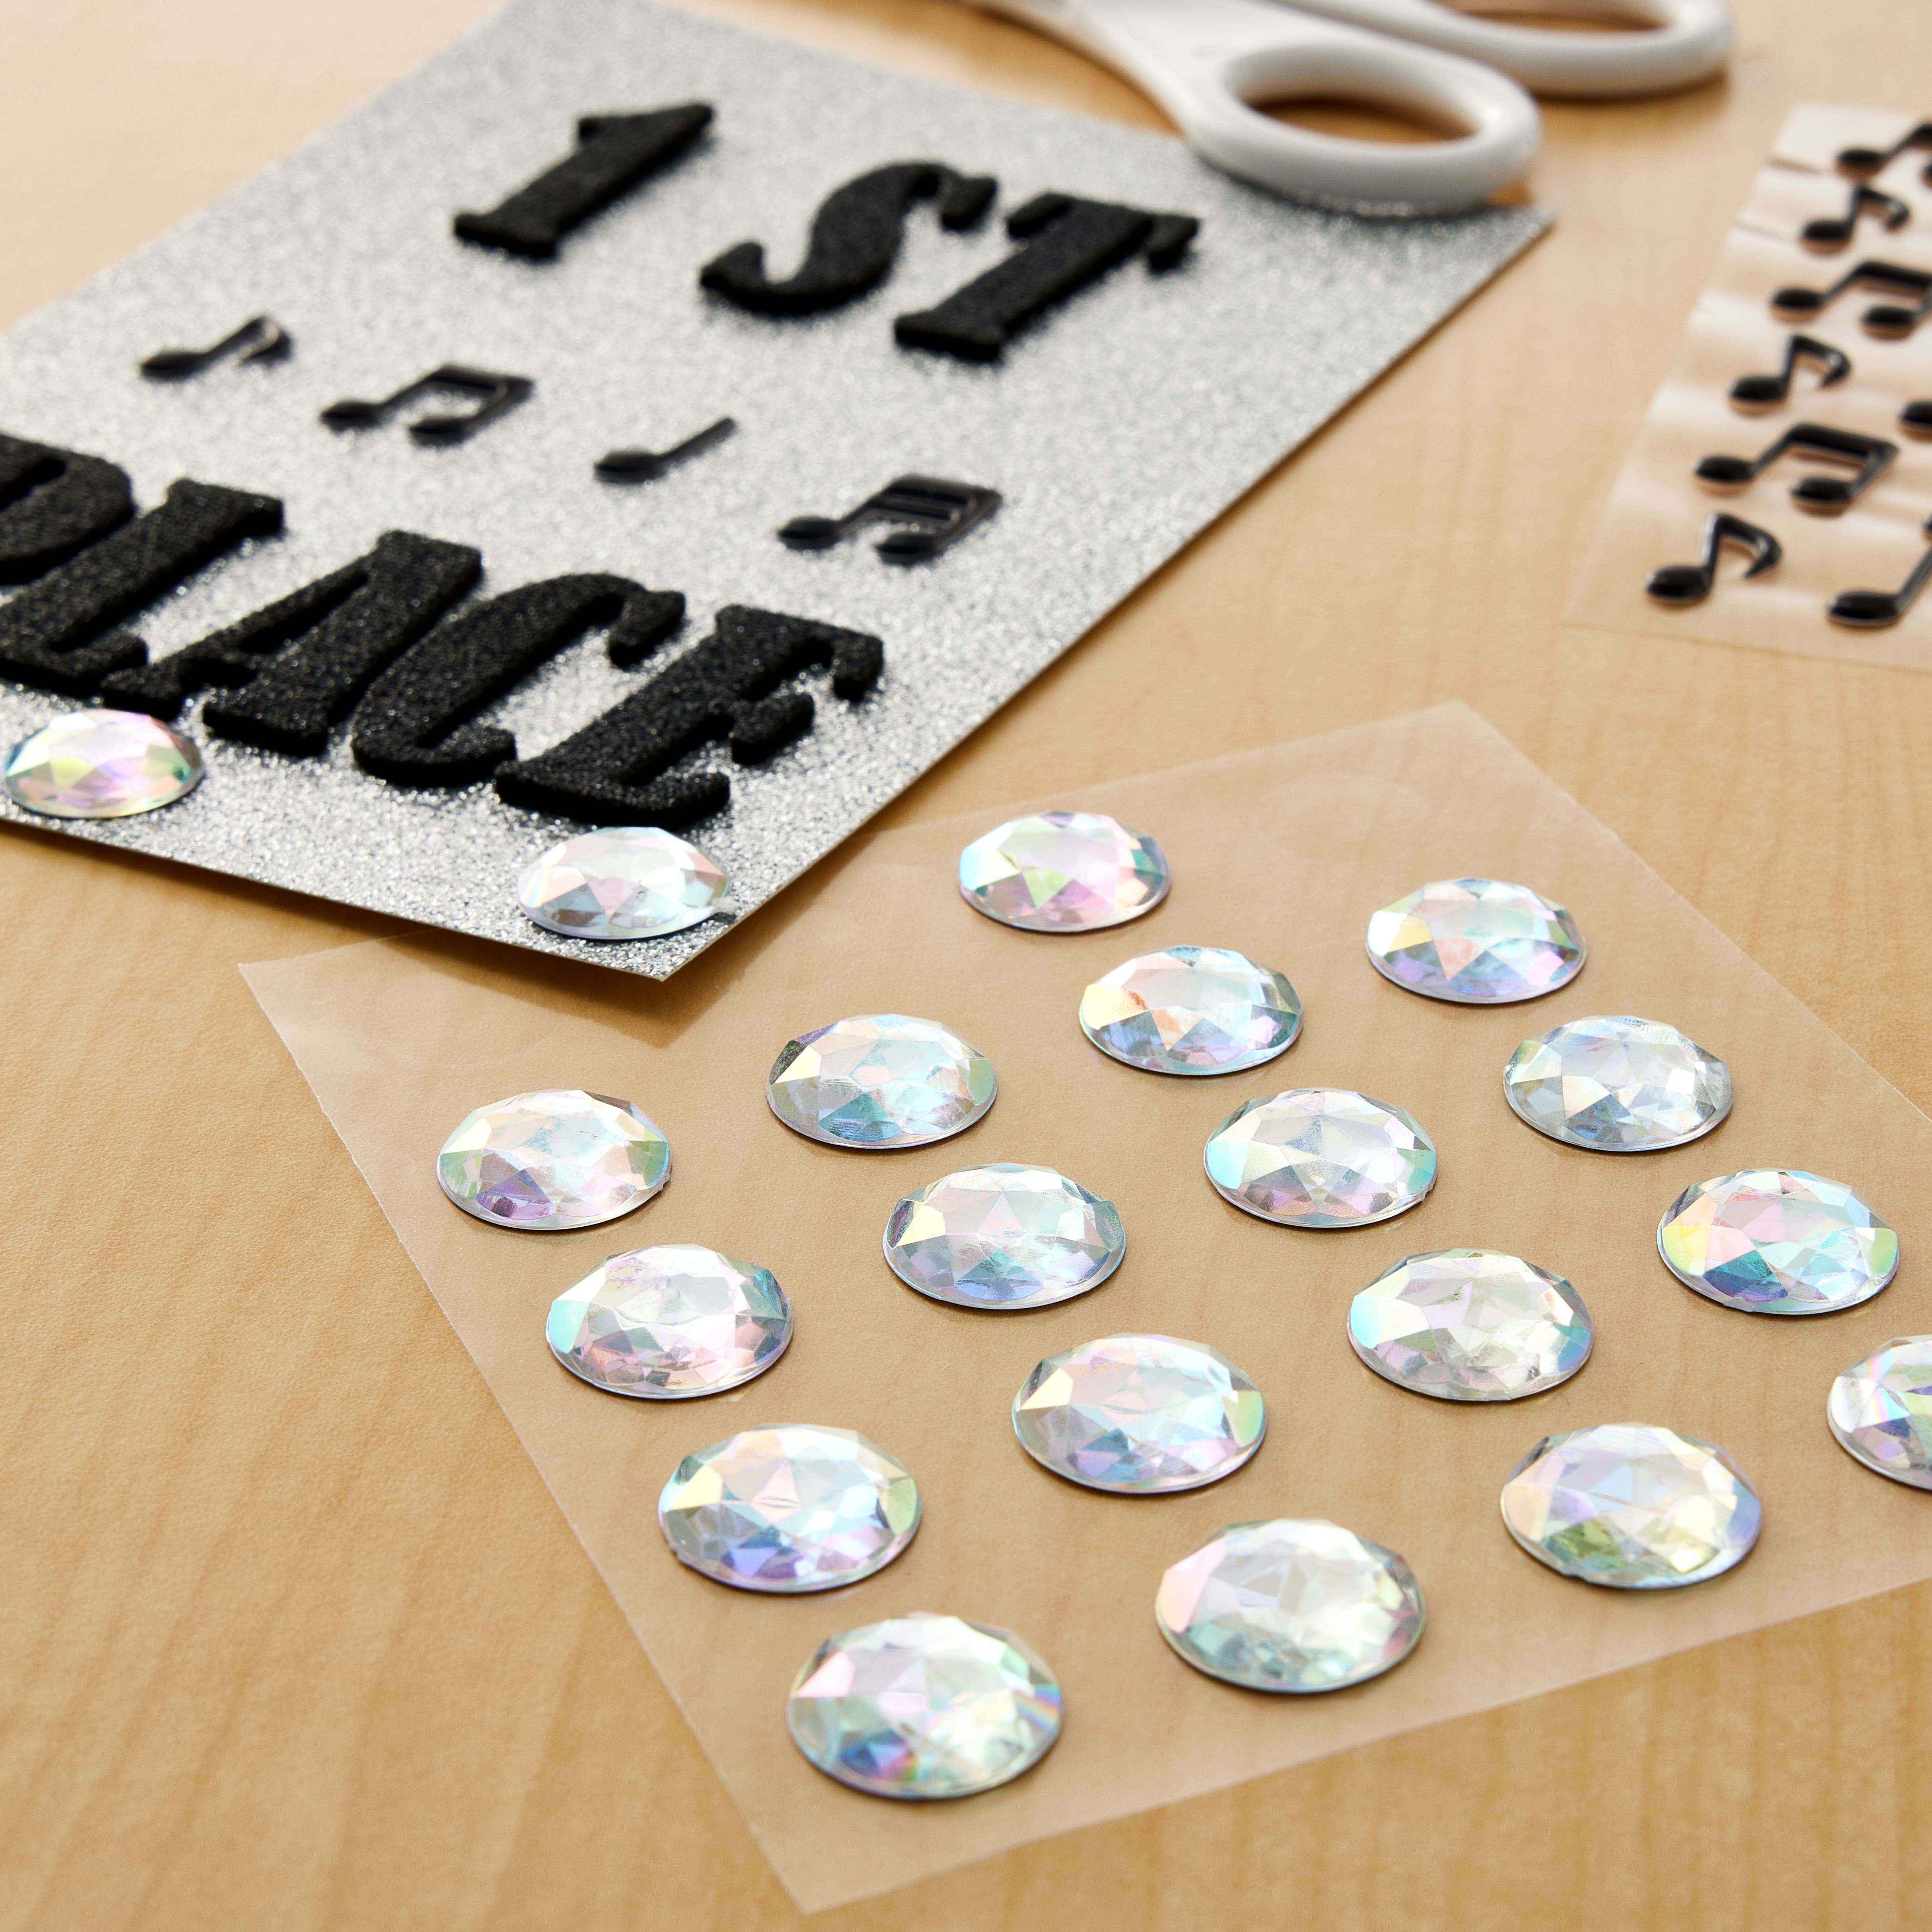 Exquisite Precious Gems Sticker Collection. Gemstone sticker